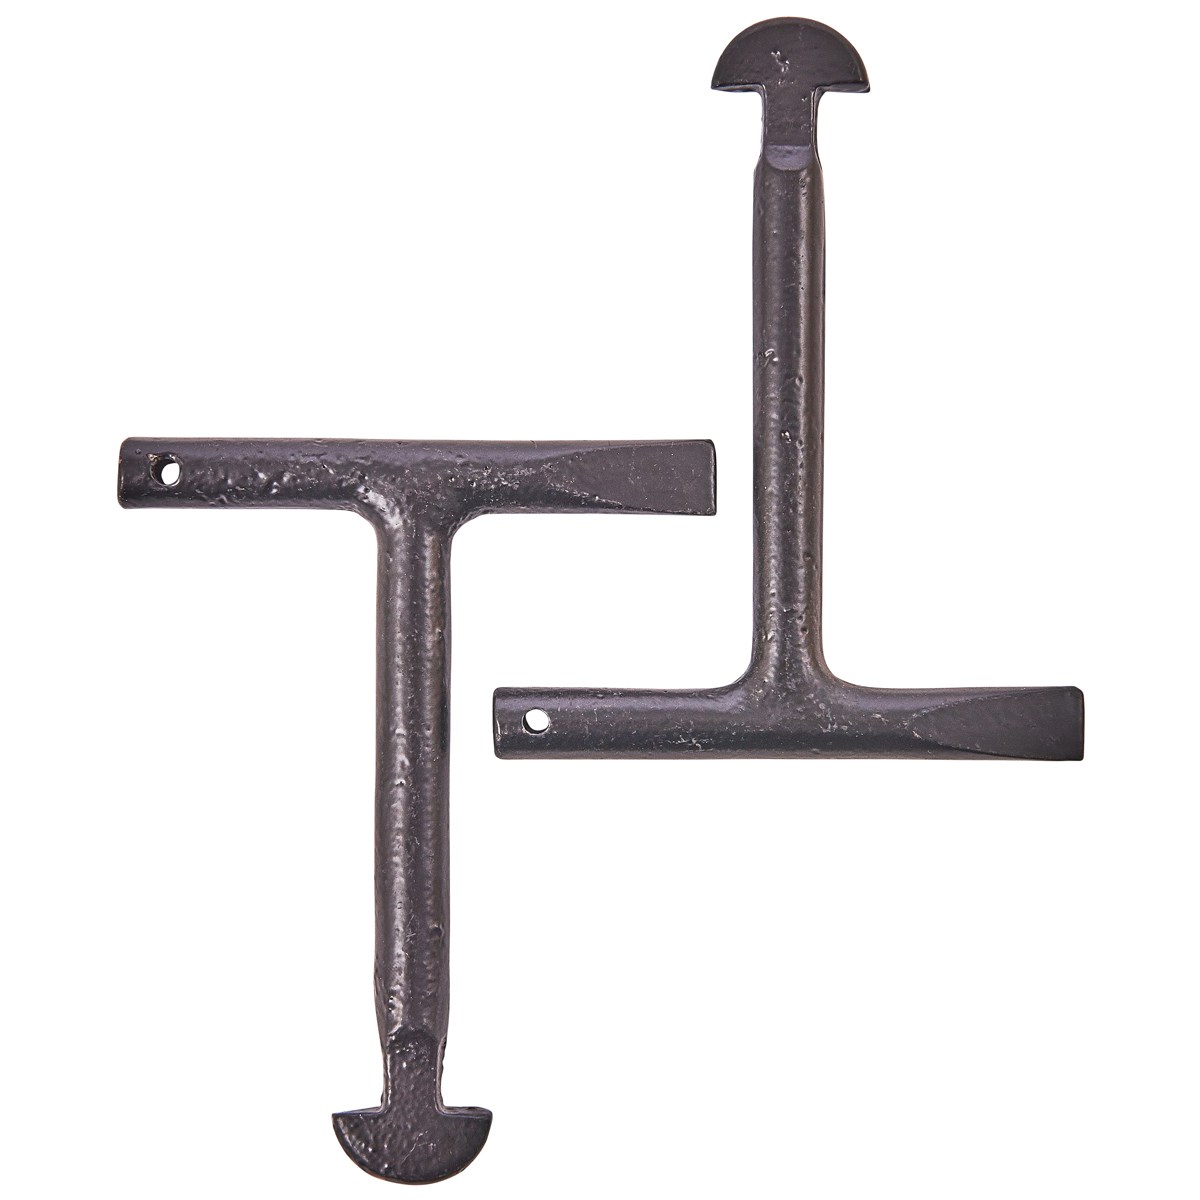 2pc T-handle Manhole Key Set Amtech C3185 for sale online 